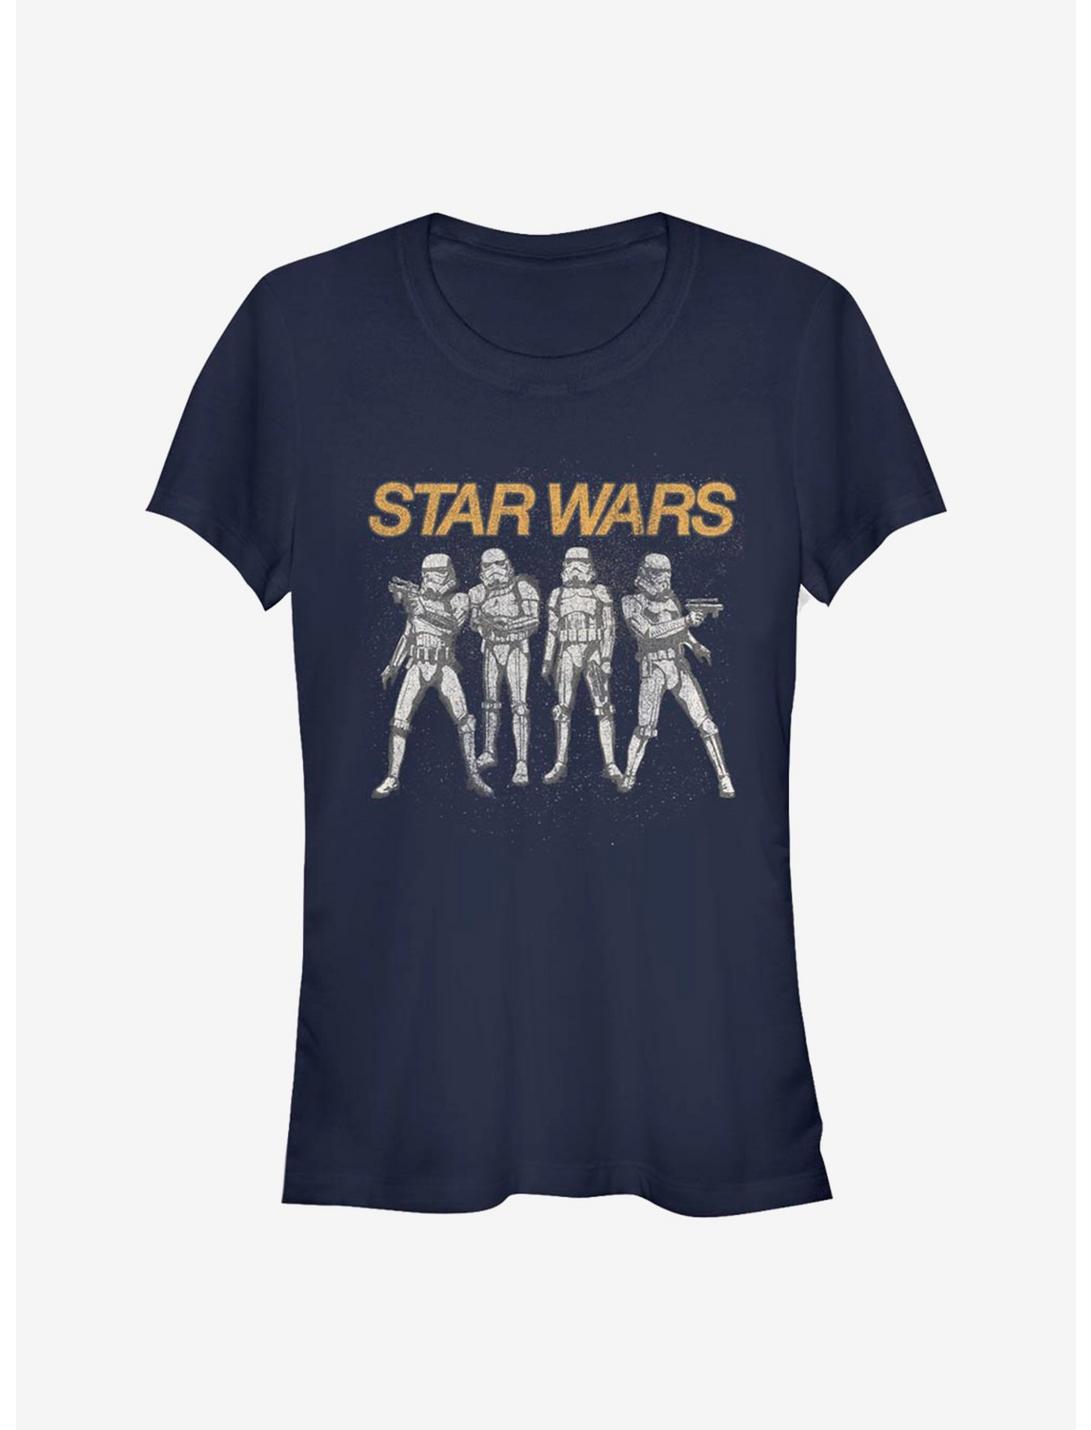 Star Wars Trooper Line Up Girls T-Shirt, NAVY, hi-res